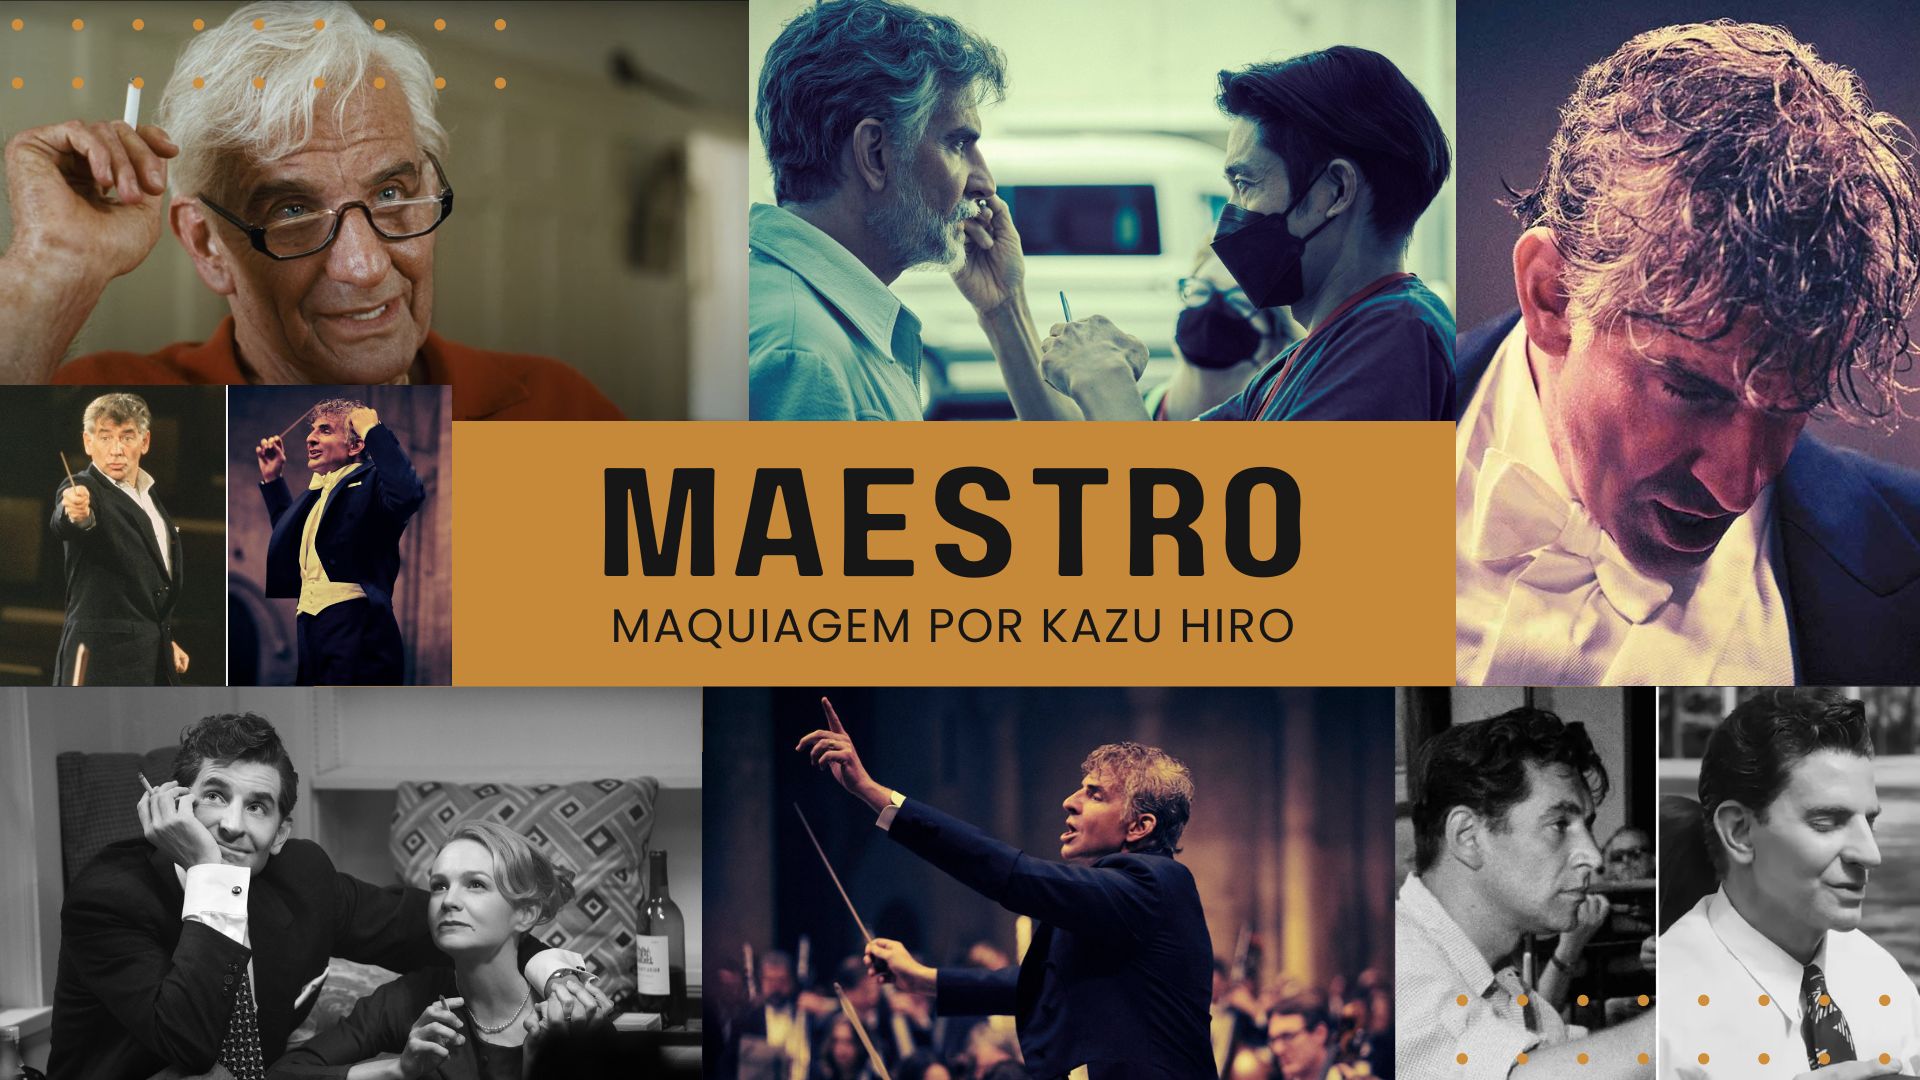 Kazu Hiro novamente indicado ao Oscar por “Maestro” com Bradley Cooper, disponível na Netflix